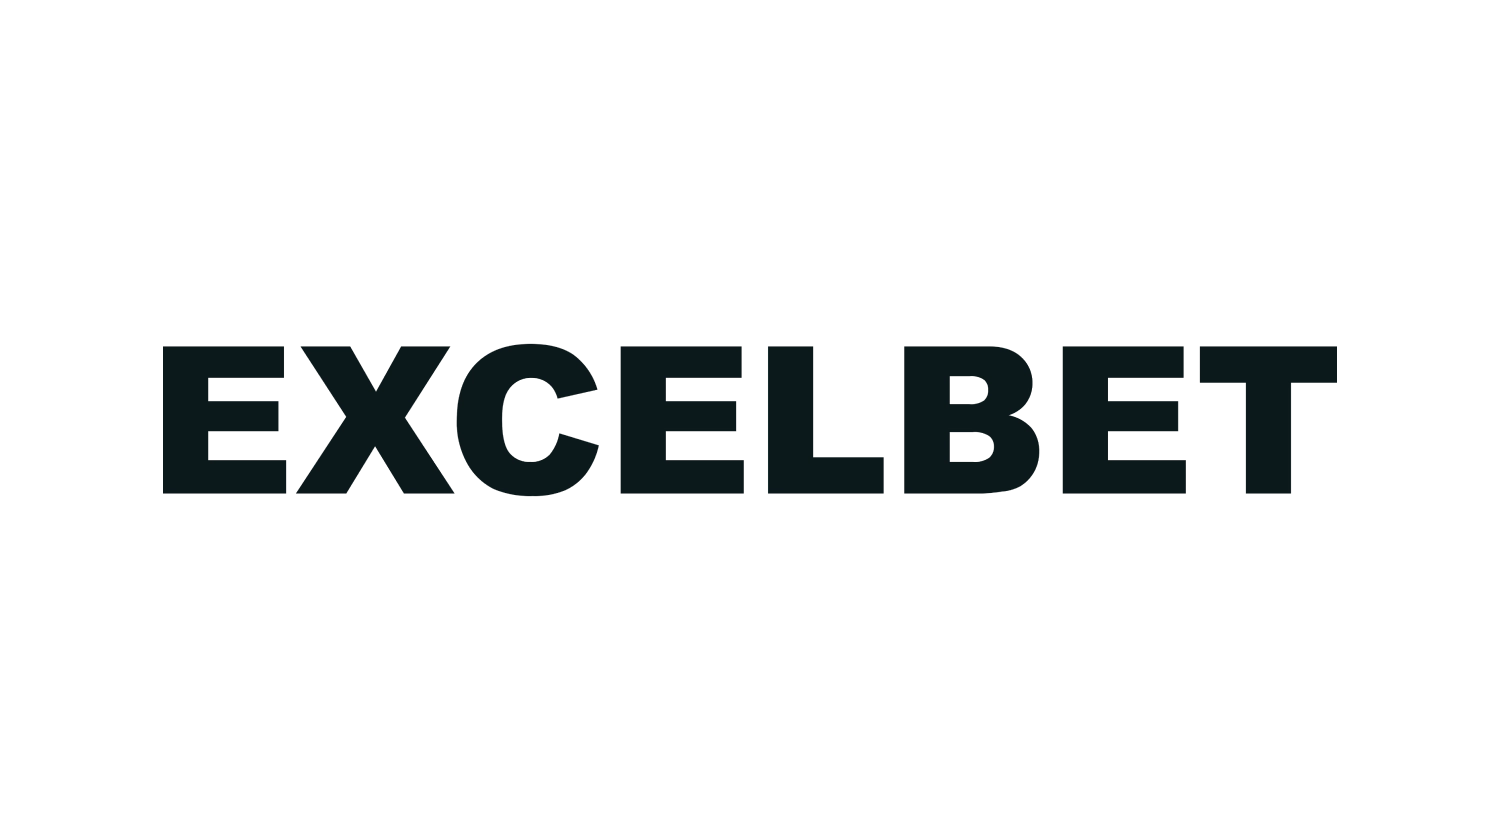 Excelbet logo 1500x840